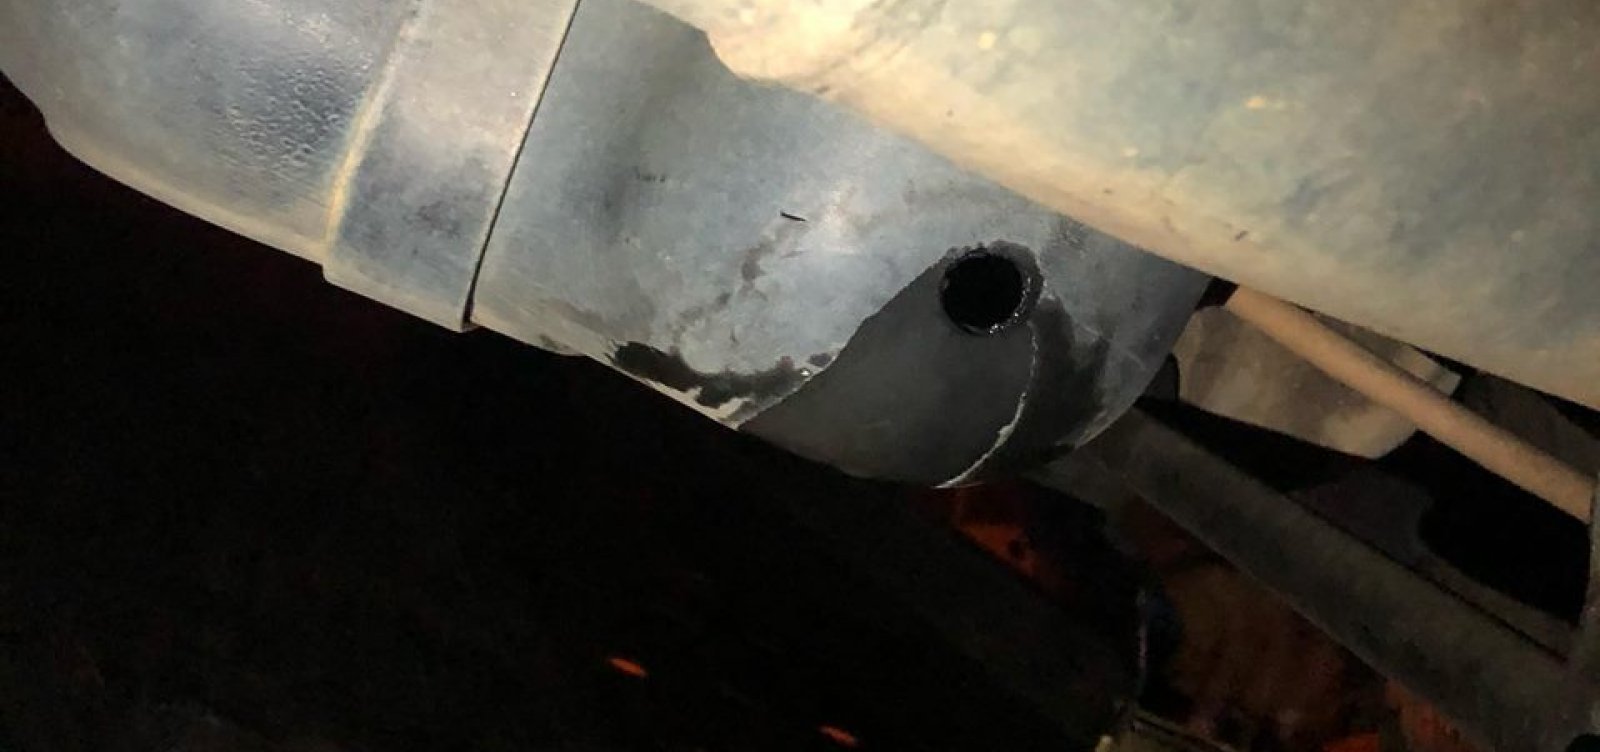 Em SP, bandido rouba gasolina após fazer buraco em tanque de carro 